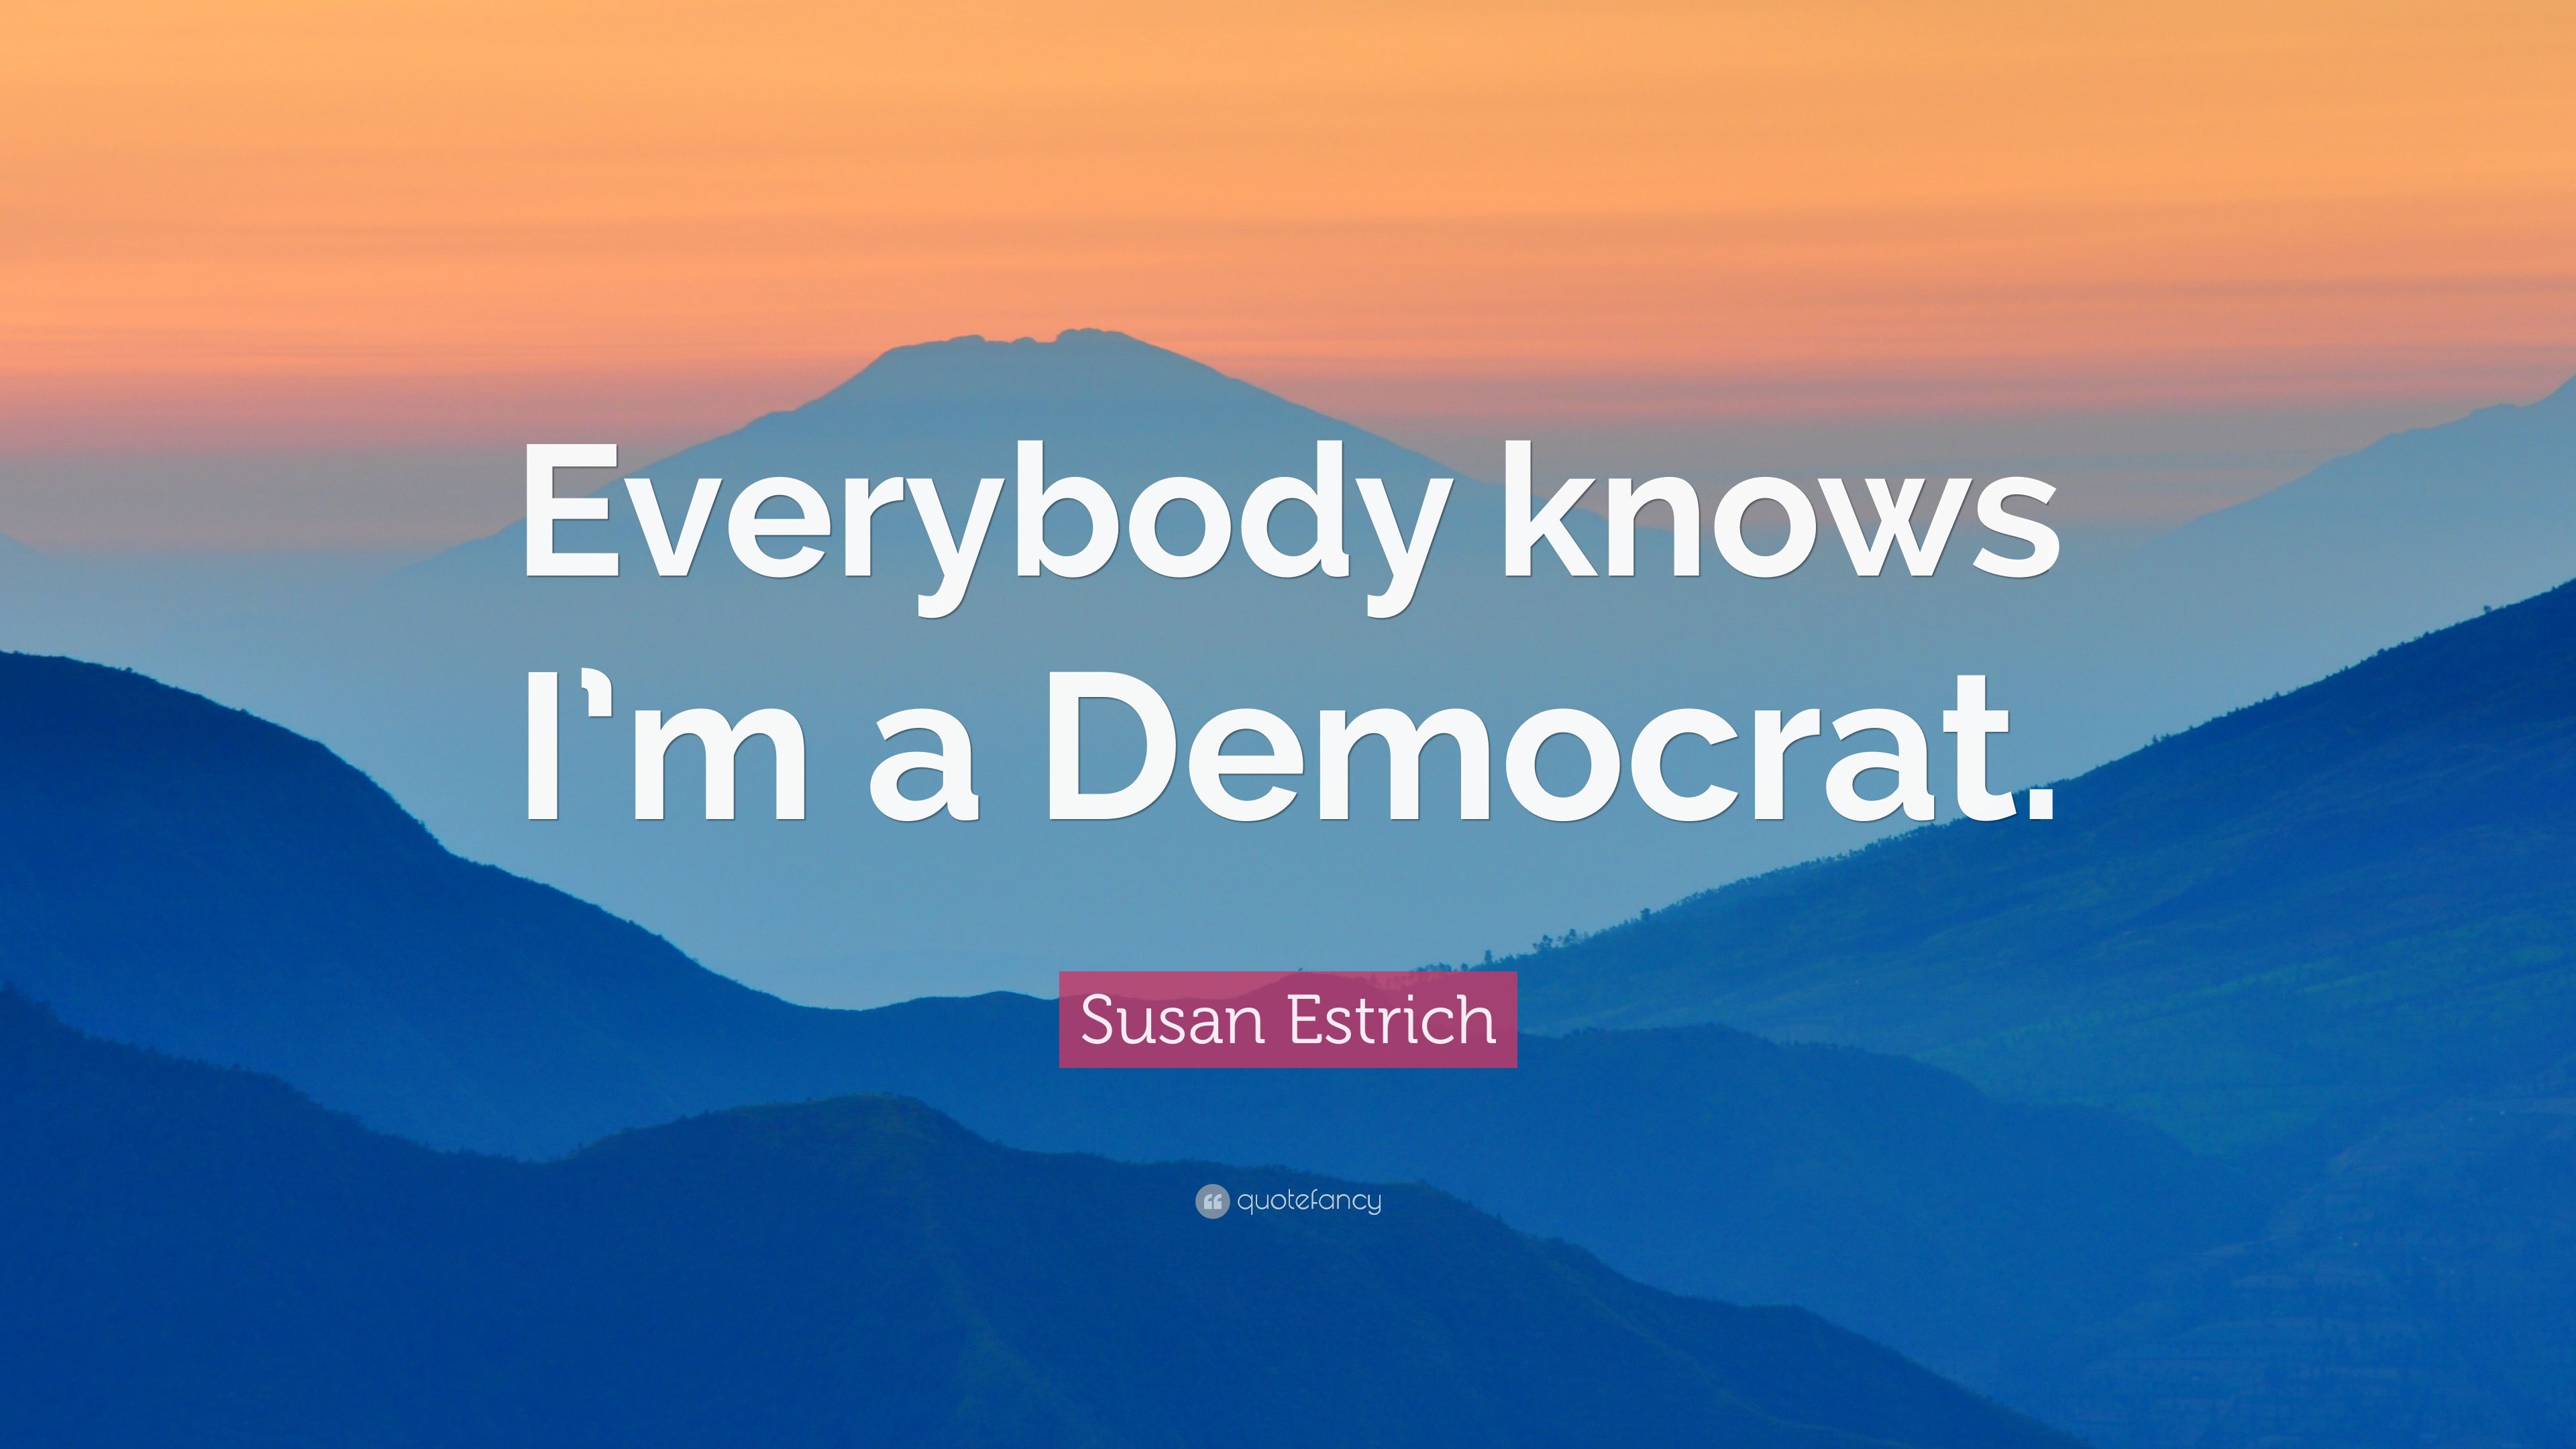 Susan Estrich Quote: “Everybody knows I'm a Democrat.” (7 wallpaper)